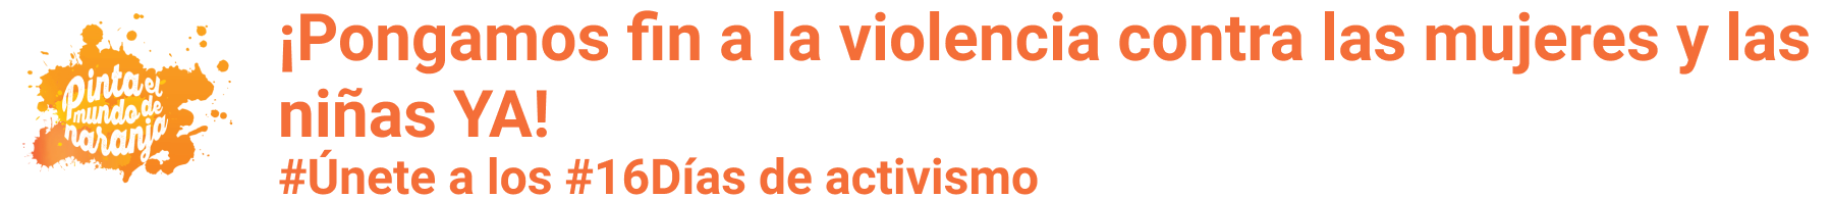 Logotipo de la campaña "Pinta el mundo de Naranja" acompañado por un mensaje que dice "¡Pongamos fin a la violencia contra las mujeres y las niñas YA! #Únete a los #16Días de activismo"